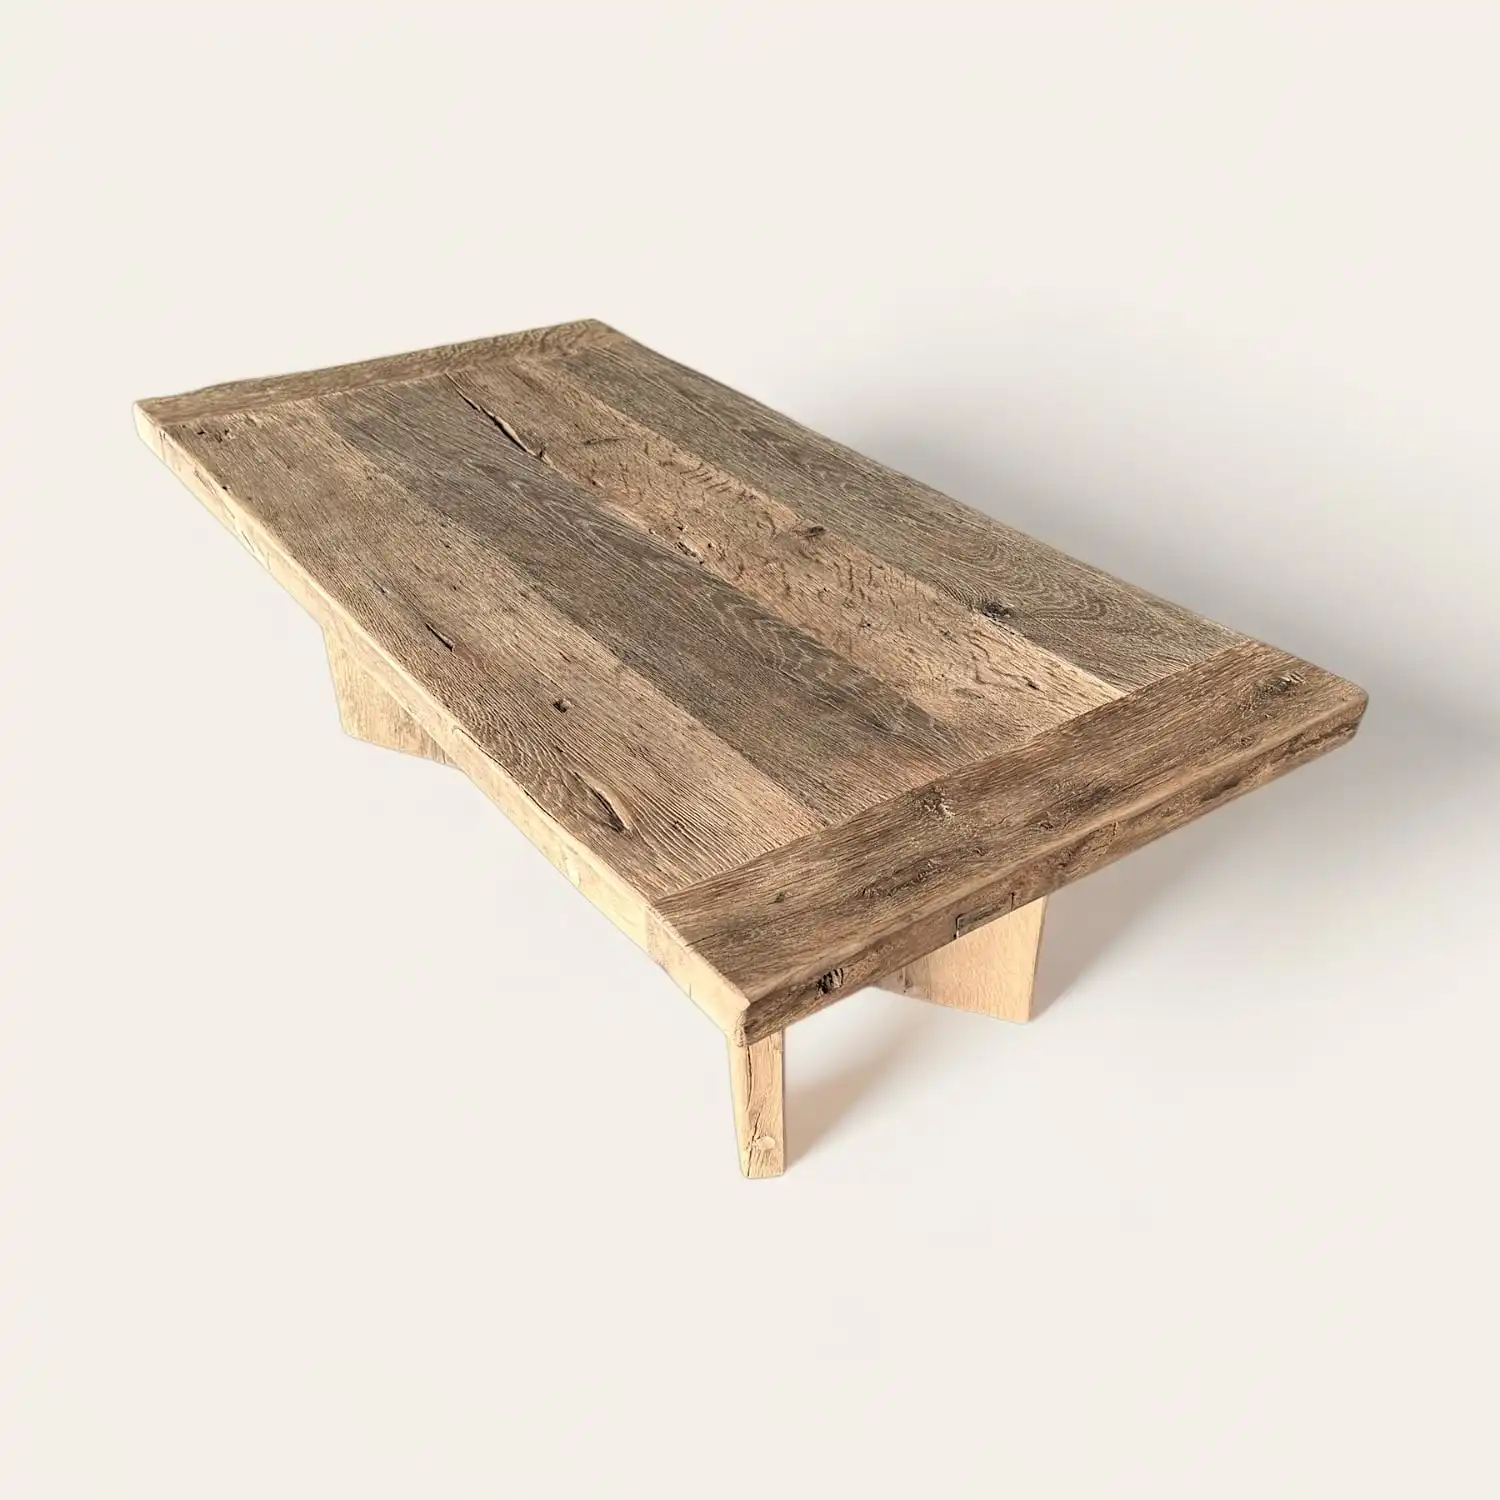  Une table basse rustique rectangulaire en bois sur fond blanc. 